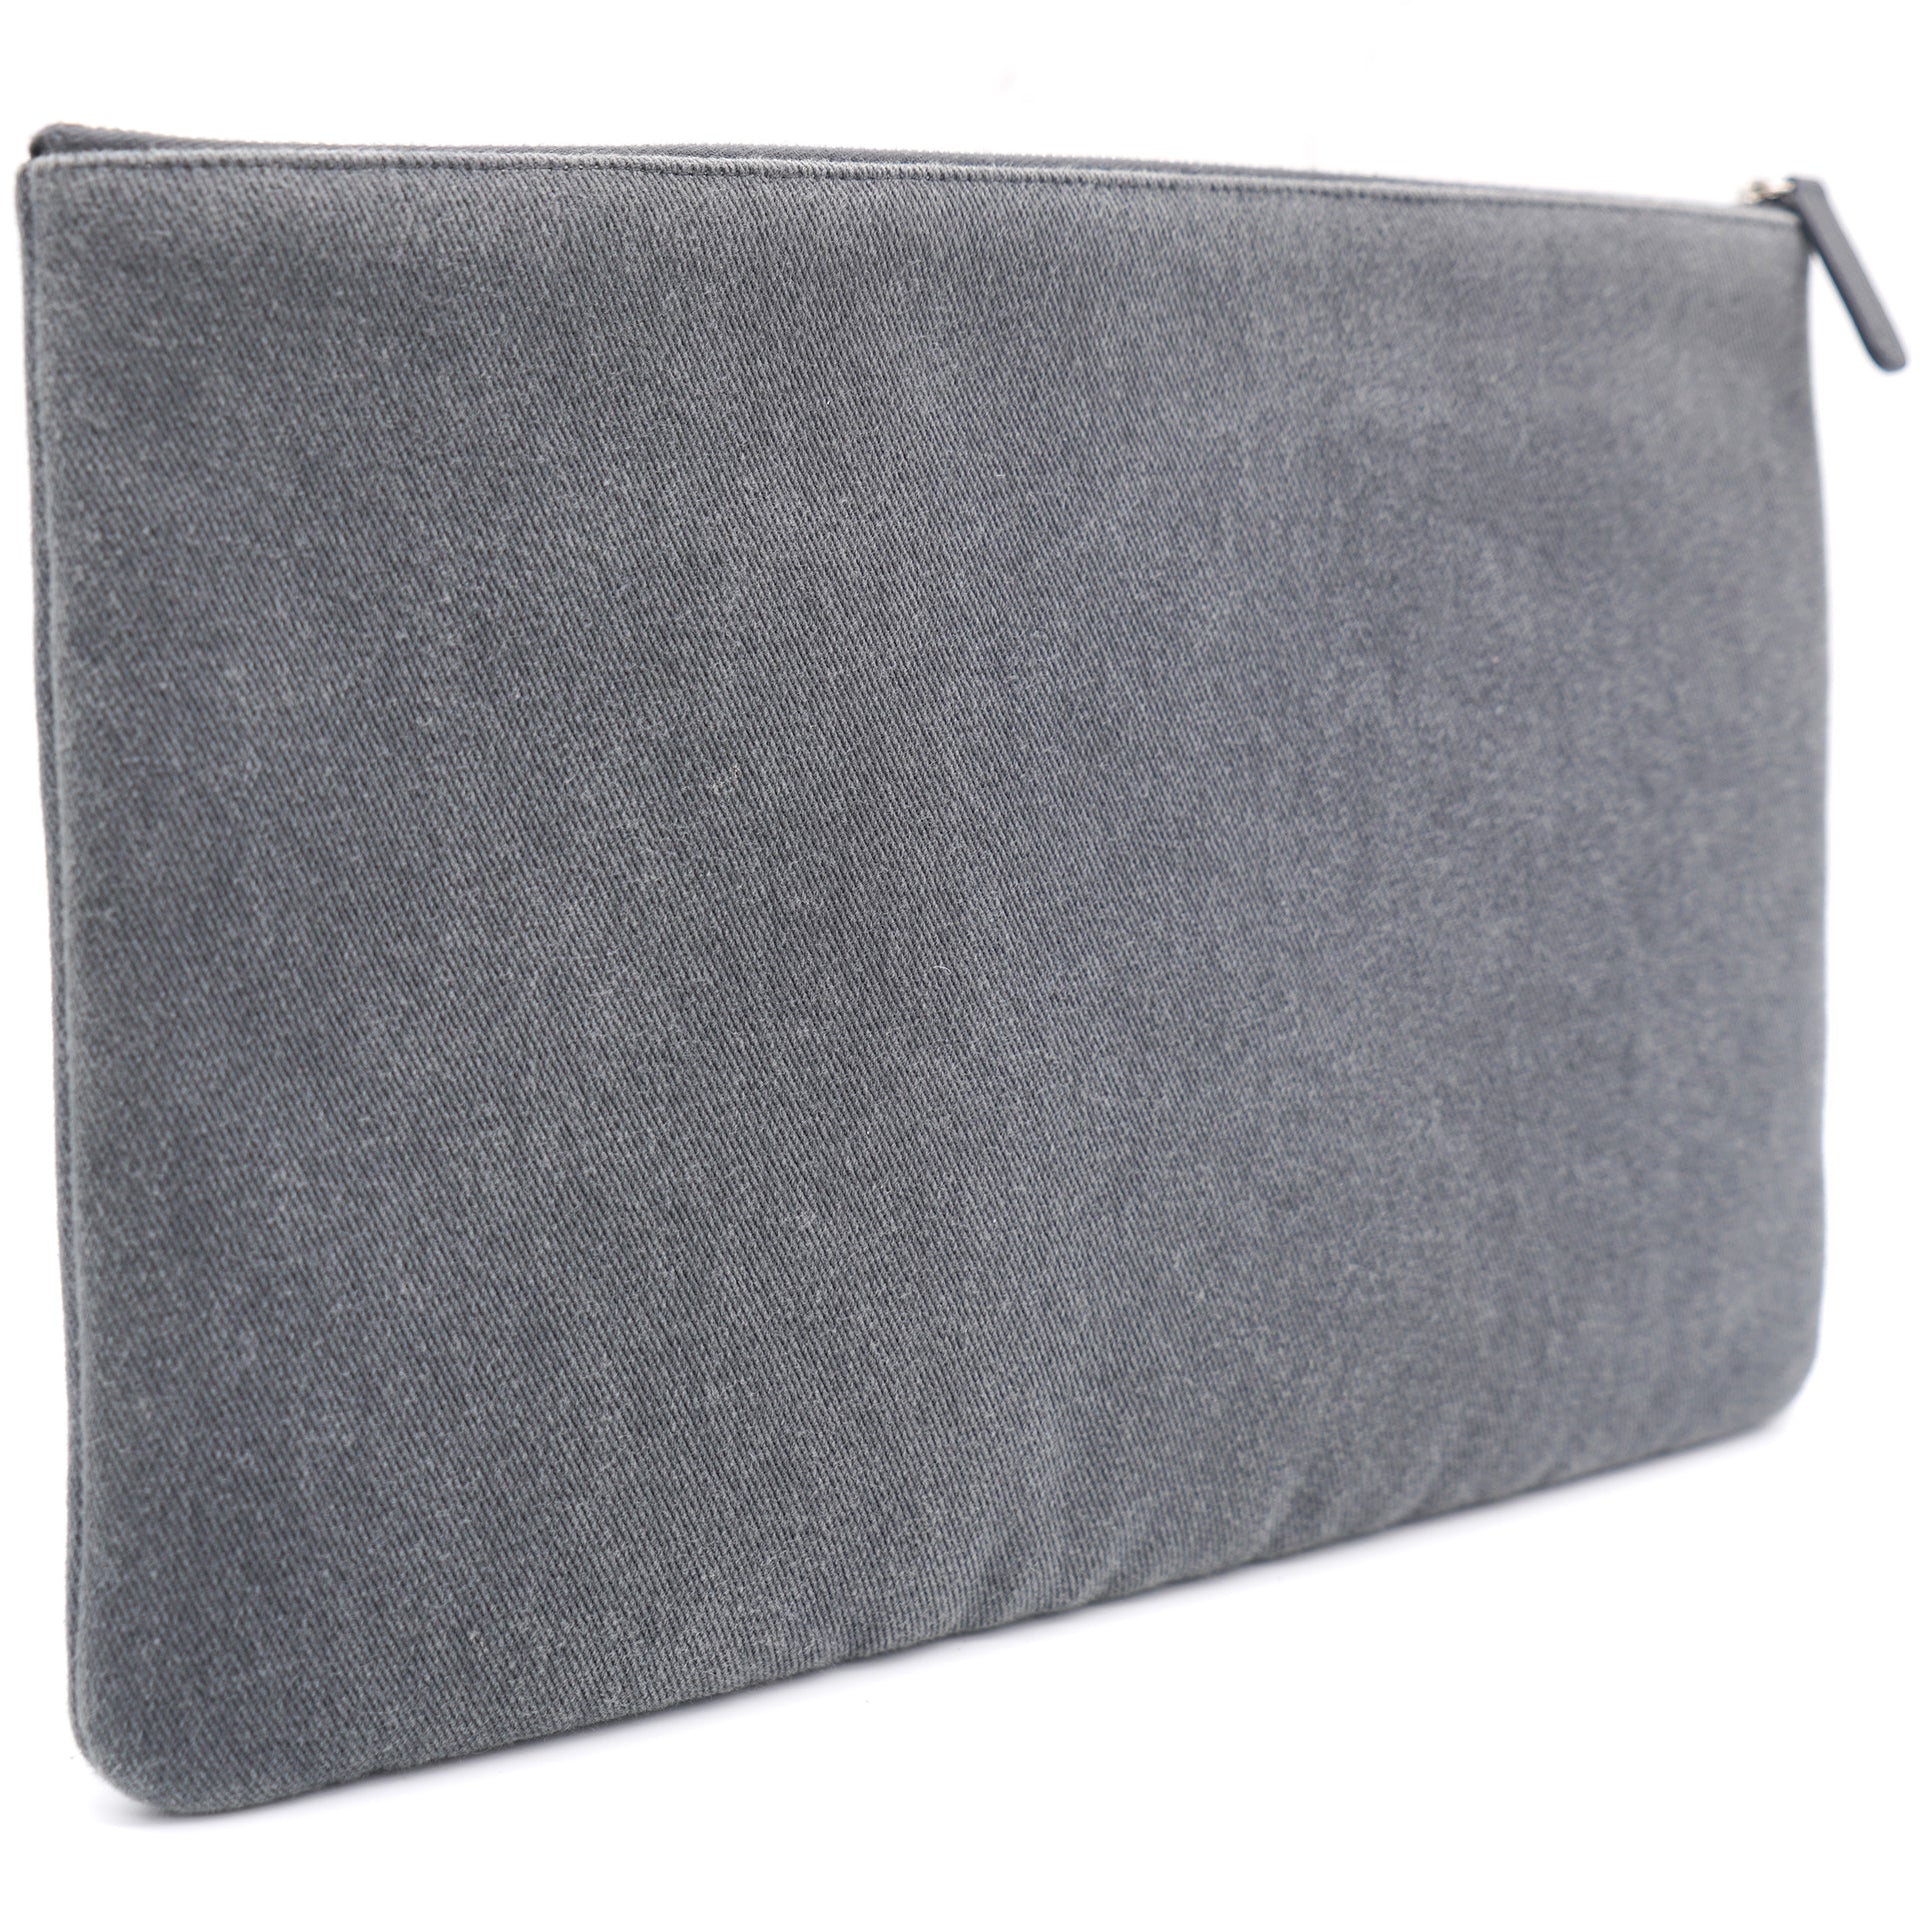 Grey Denim Fabric O Case Clutch